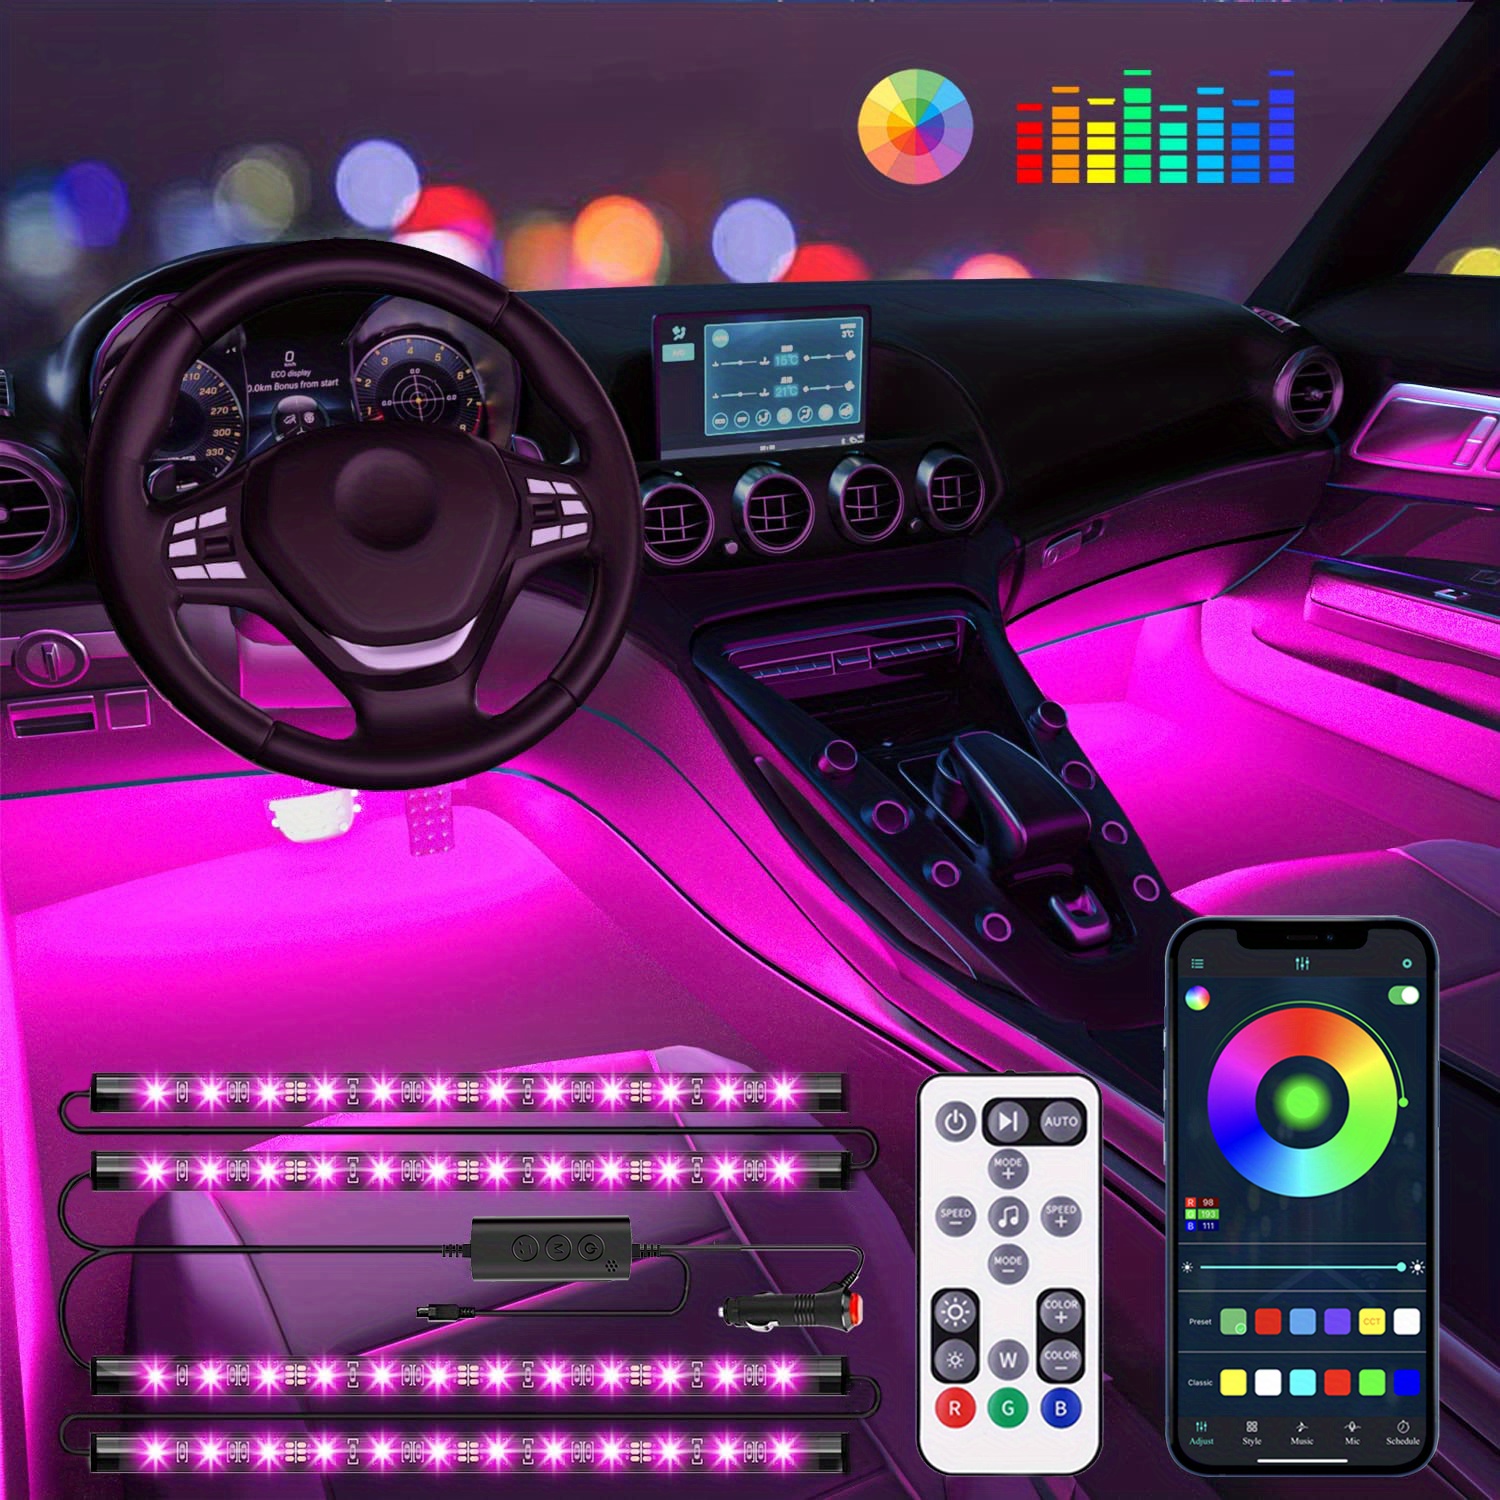 4pcs LED Car Lights, 48 LED Interior Lights With Smart App Remote Control  Lights Bars, Multicolor Music Car Strip Light Under Dash Lighting, Valentine